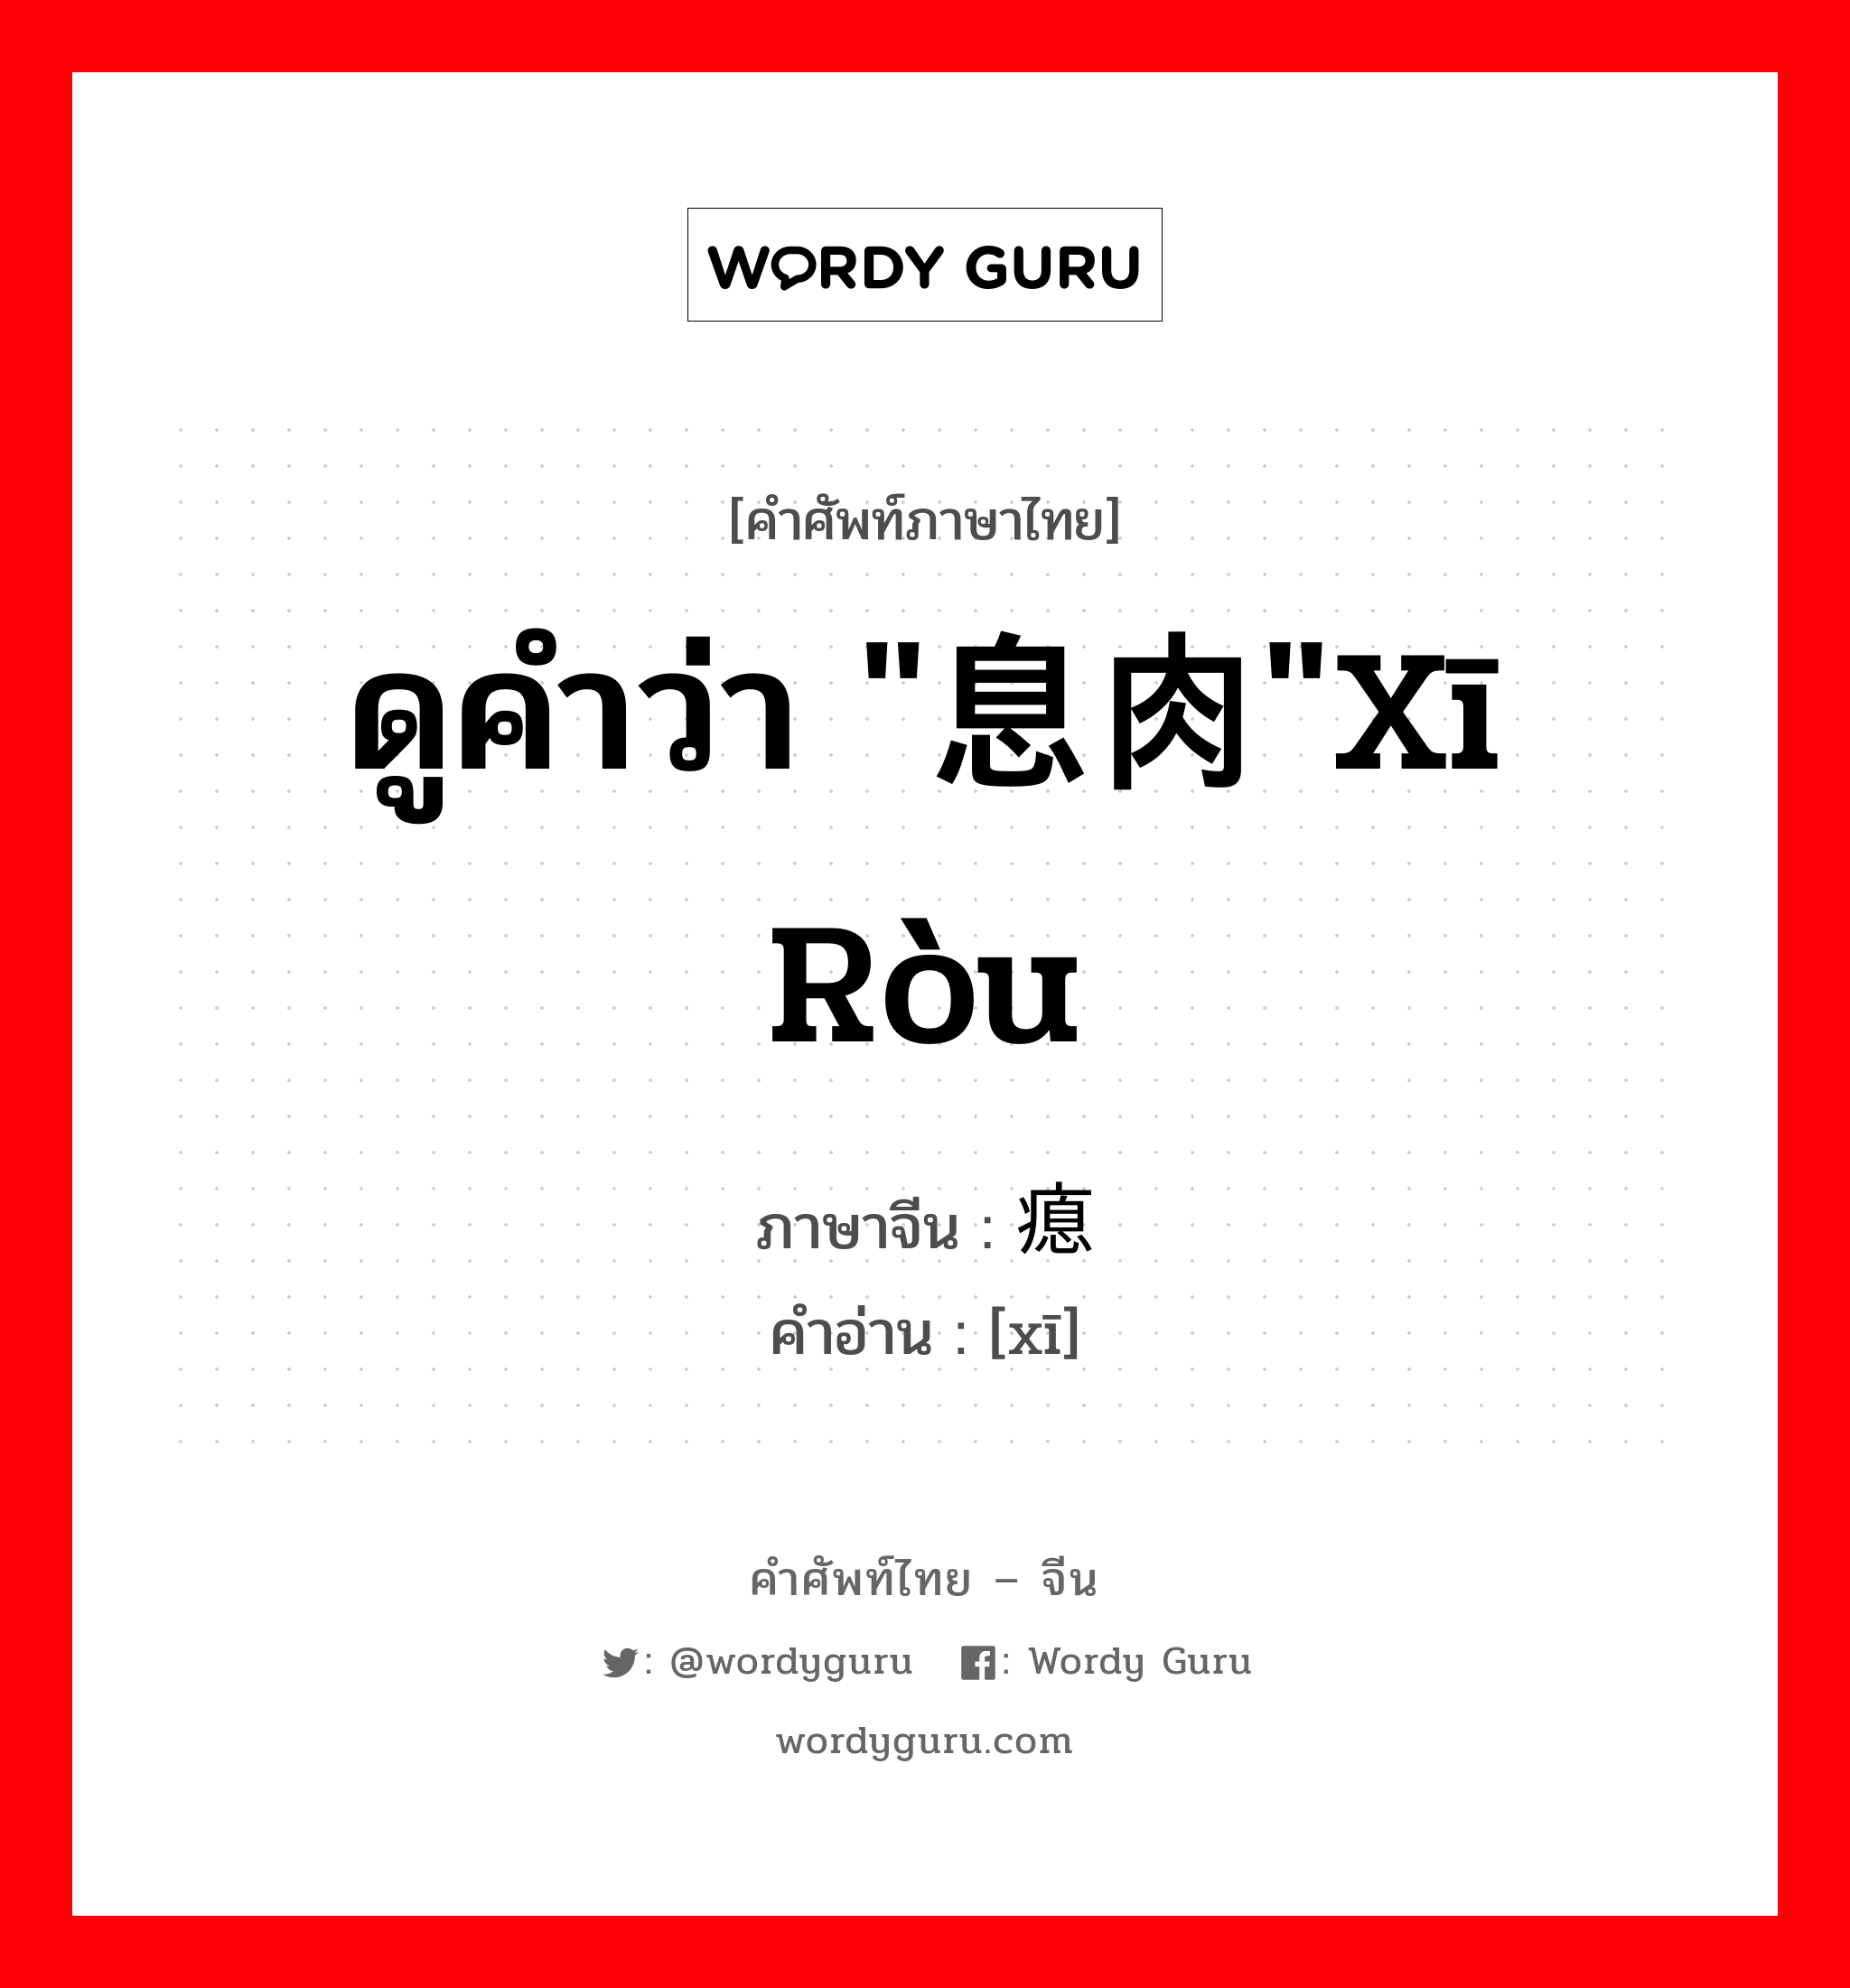 ดูคำว่า "息肉"xī ròu ภาษาจีนคืออะไร, คำศัพท์ภาษาไทย - จีน ดูคำว่า "息肉"xī ròu ภาษาจีน 瘜 คำอ่าน [xī]